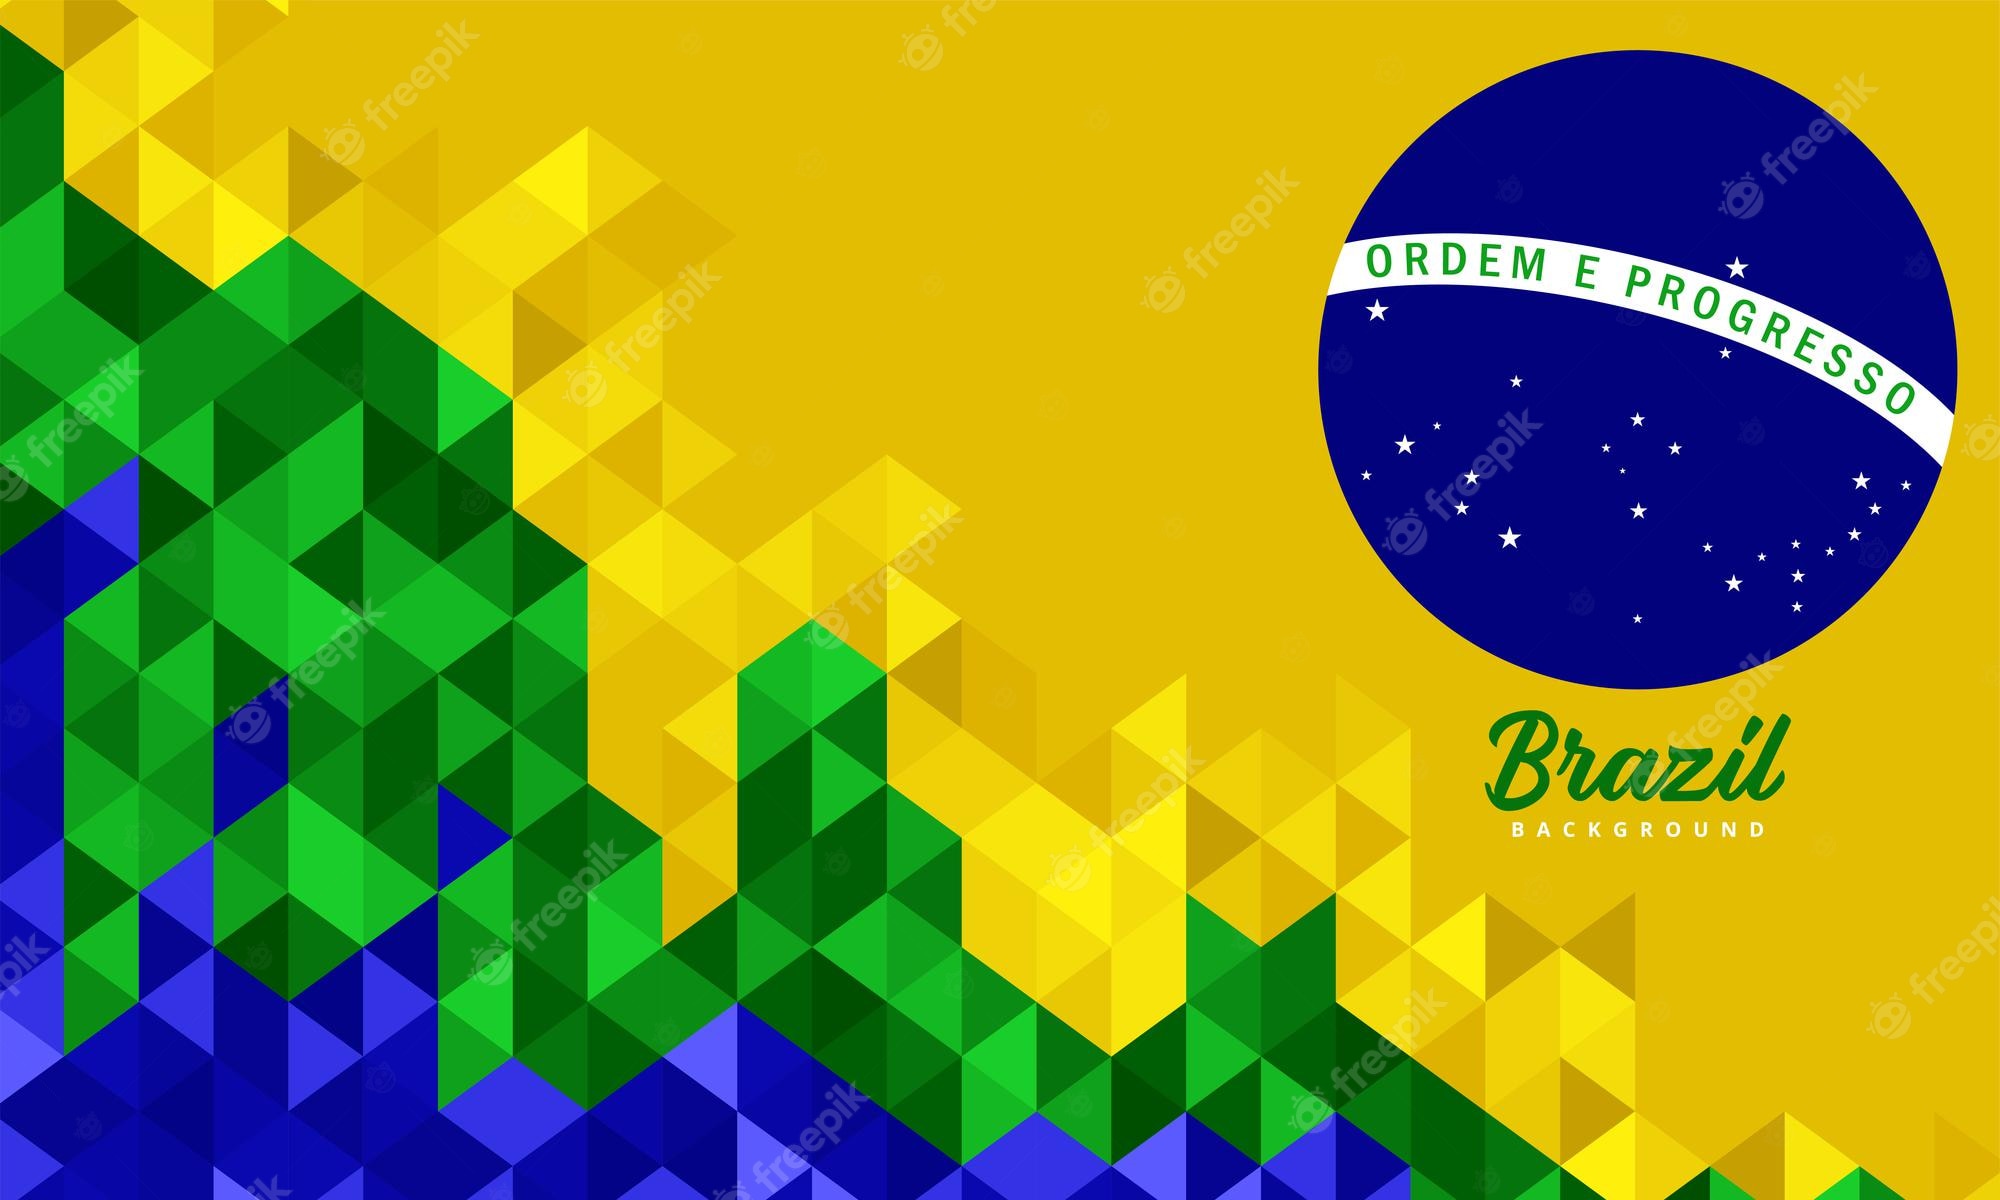 Brazil wallpaper images